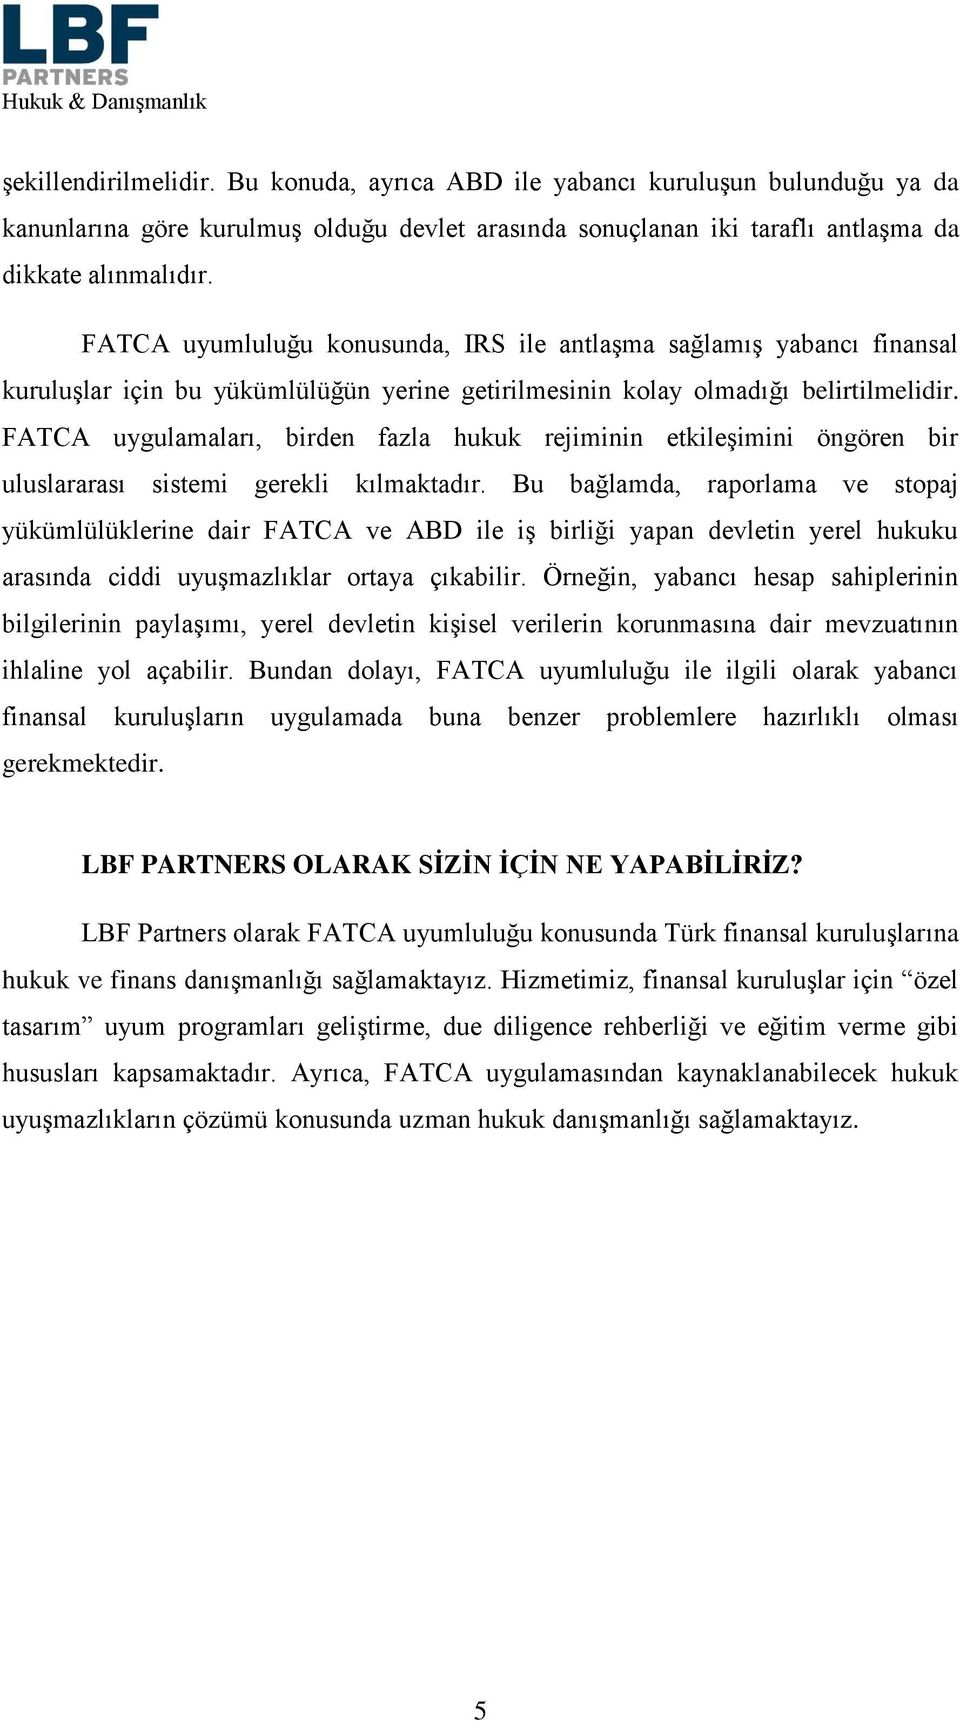 FATCA uygulamaları, birden fazla hukuk rejiminin etkileşimini öngören bir uluslararası sistemi gerekli kılmaktadır.